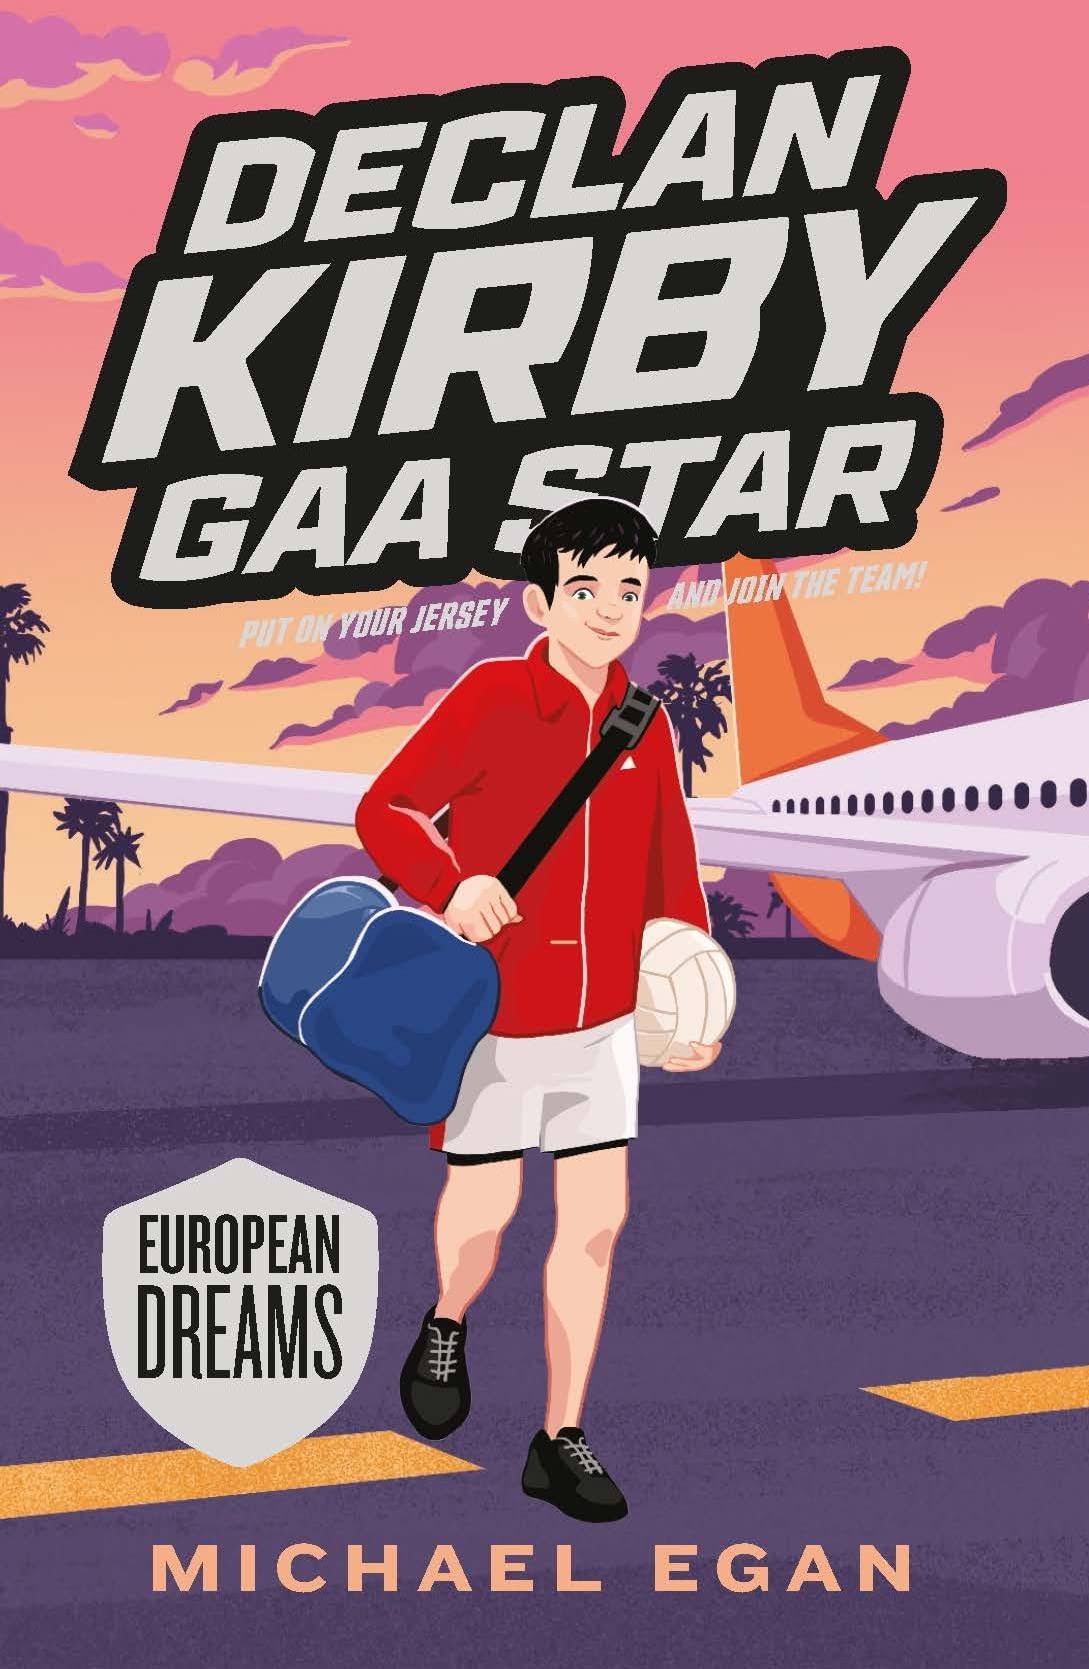 Declan Kirby GAA Star: European Dreams [Book]